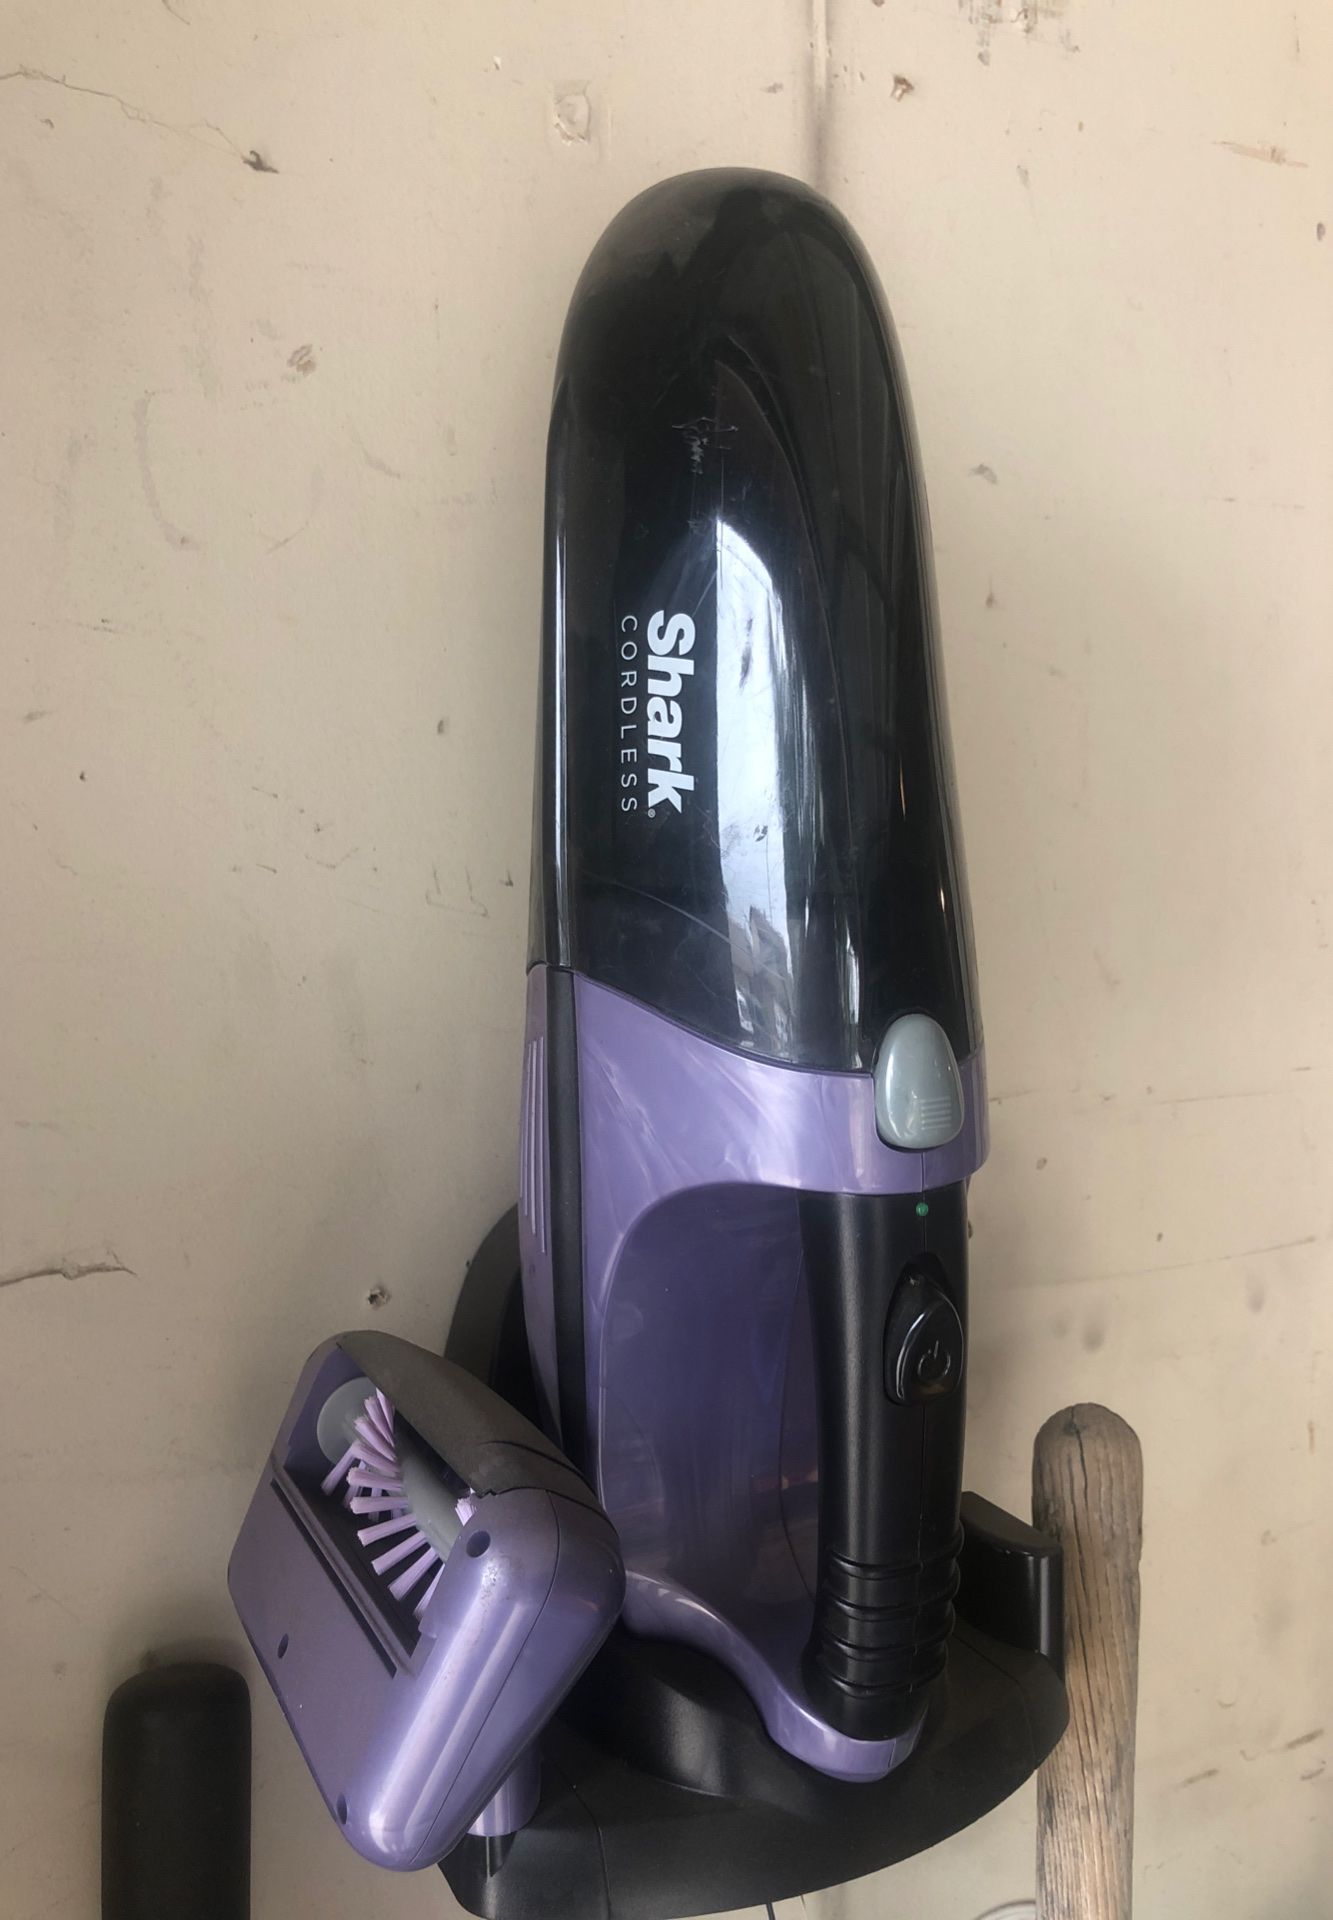 Handheld shark vacuum